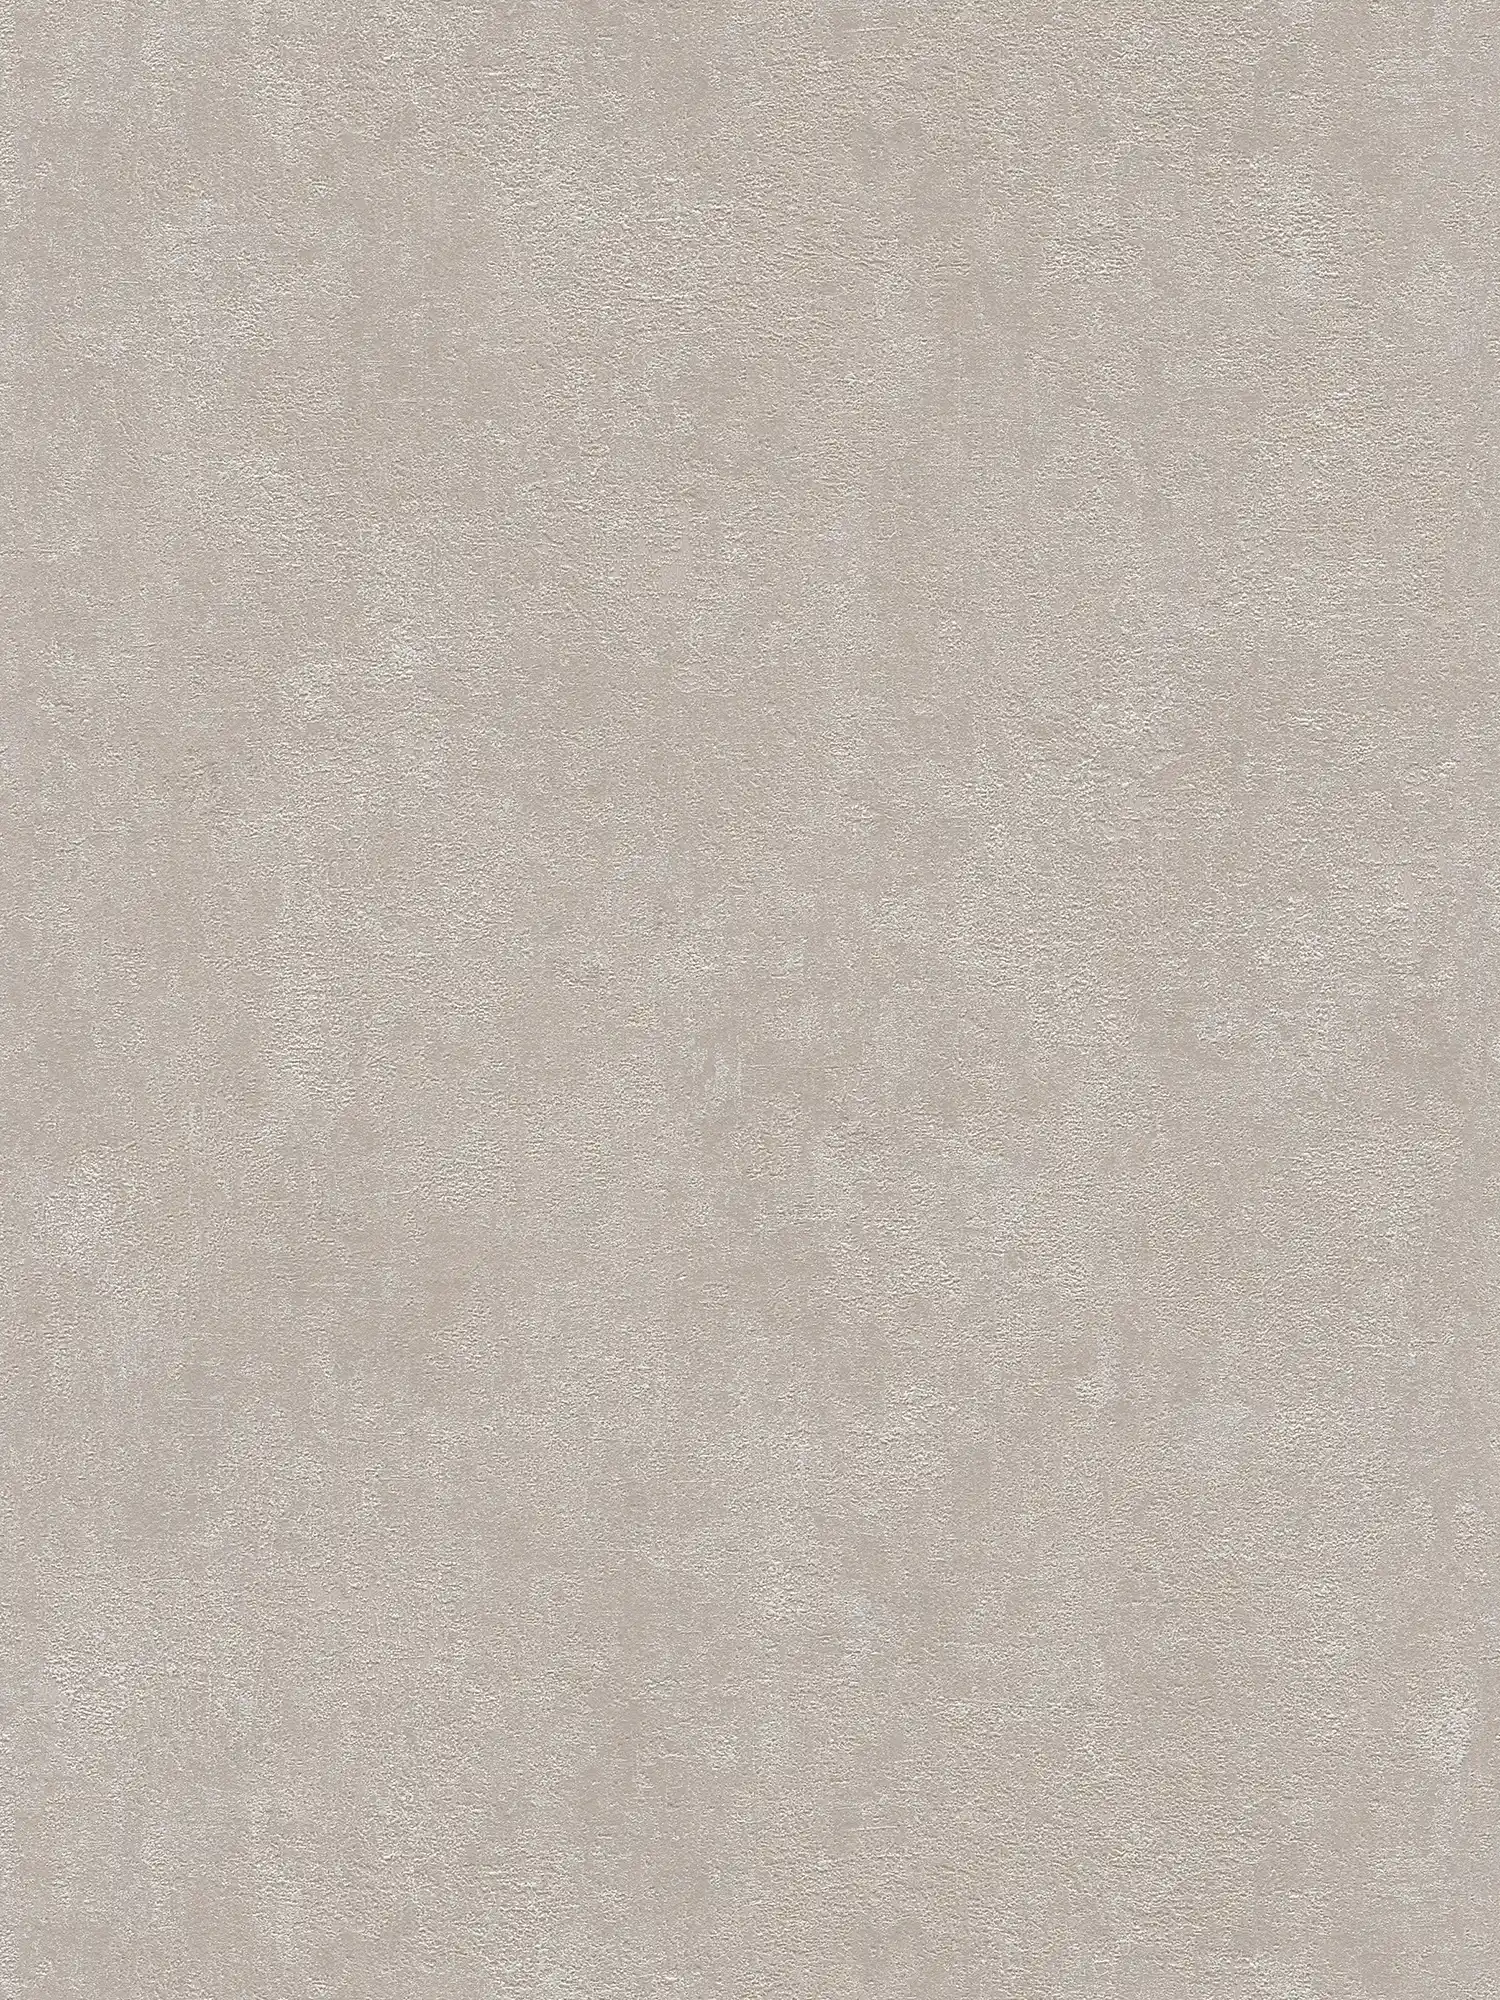 Papel pintado no tejido de seda gris mate con diseño de aspecto de piedra
